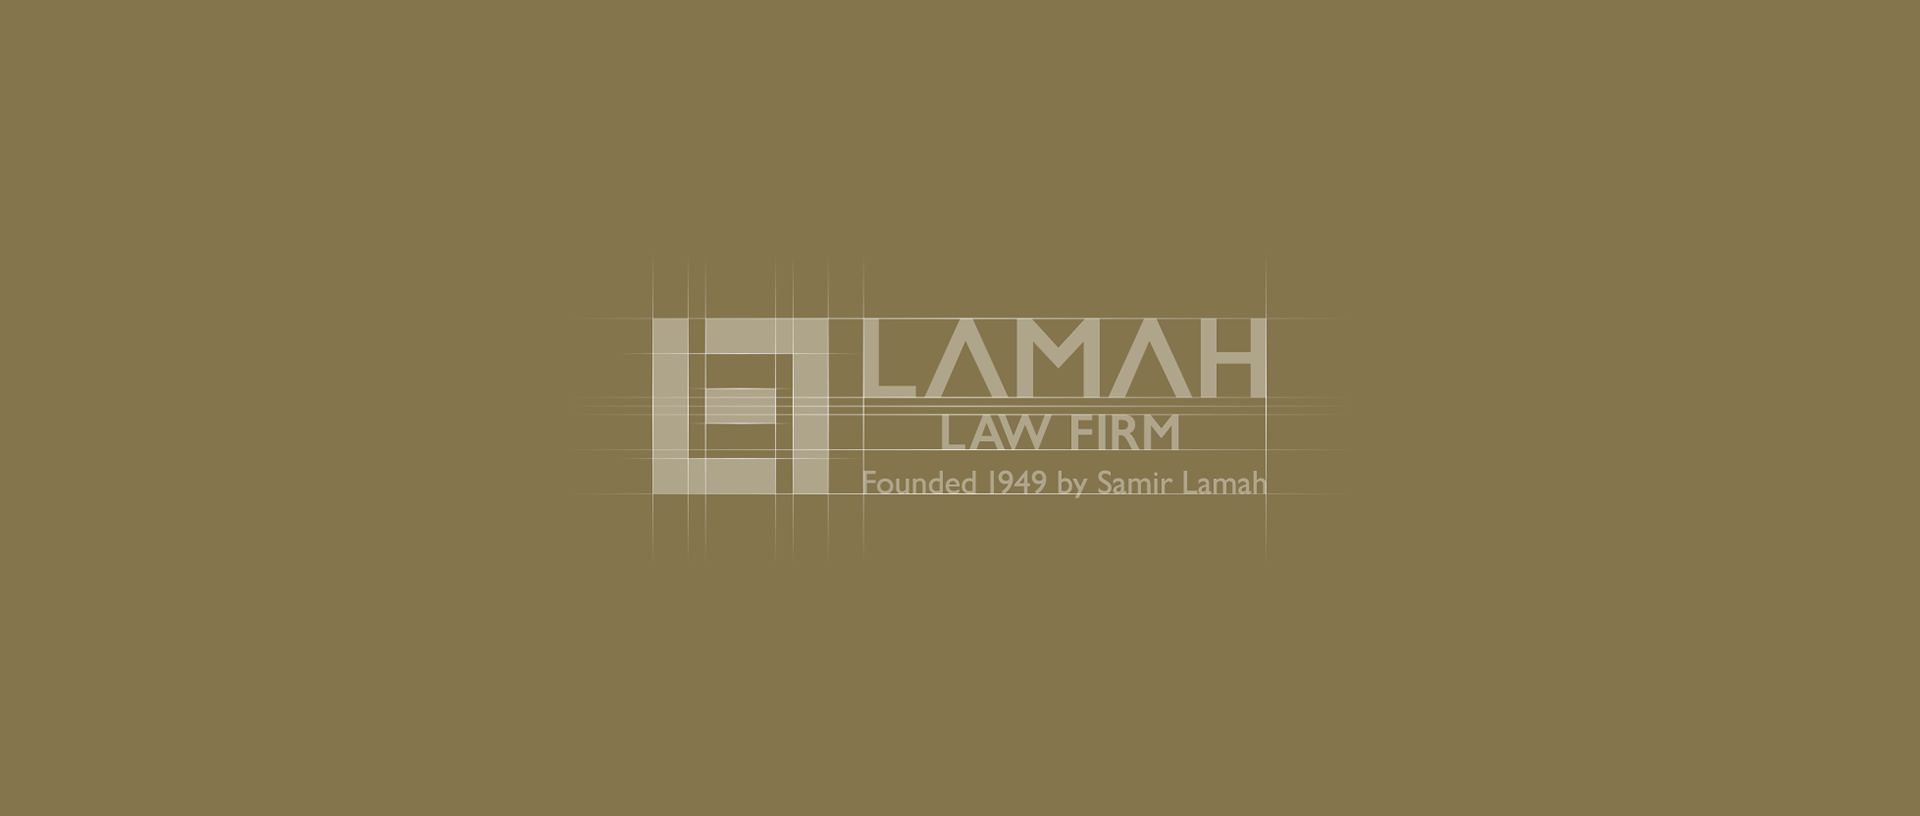 lamah-law-firm_logo-grid